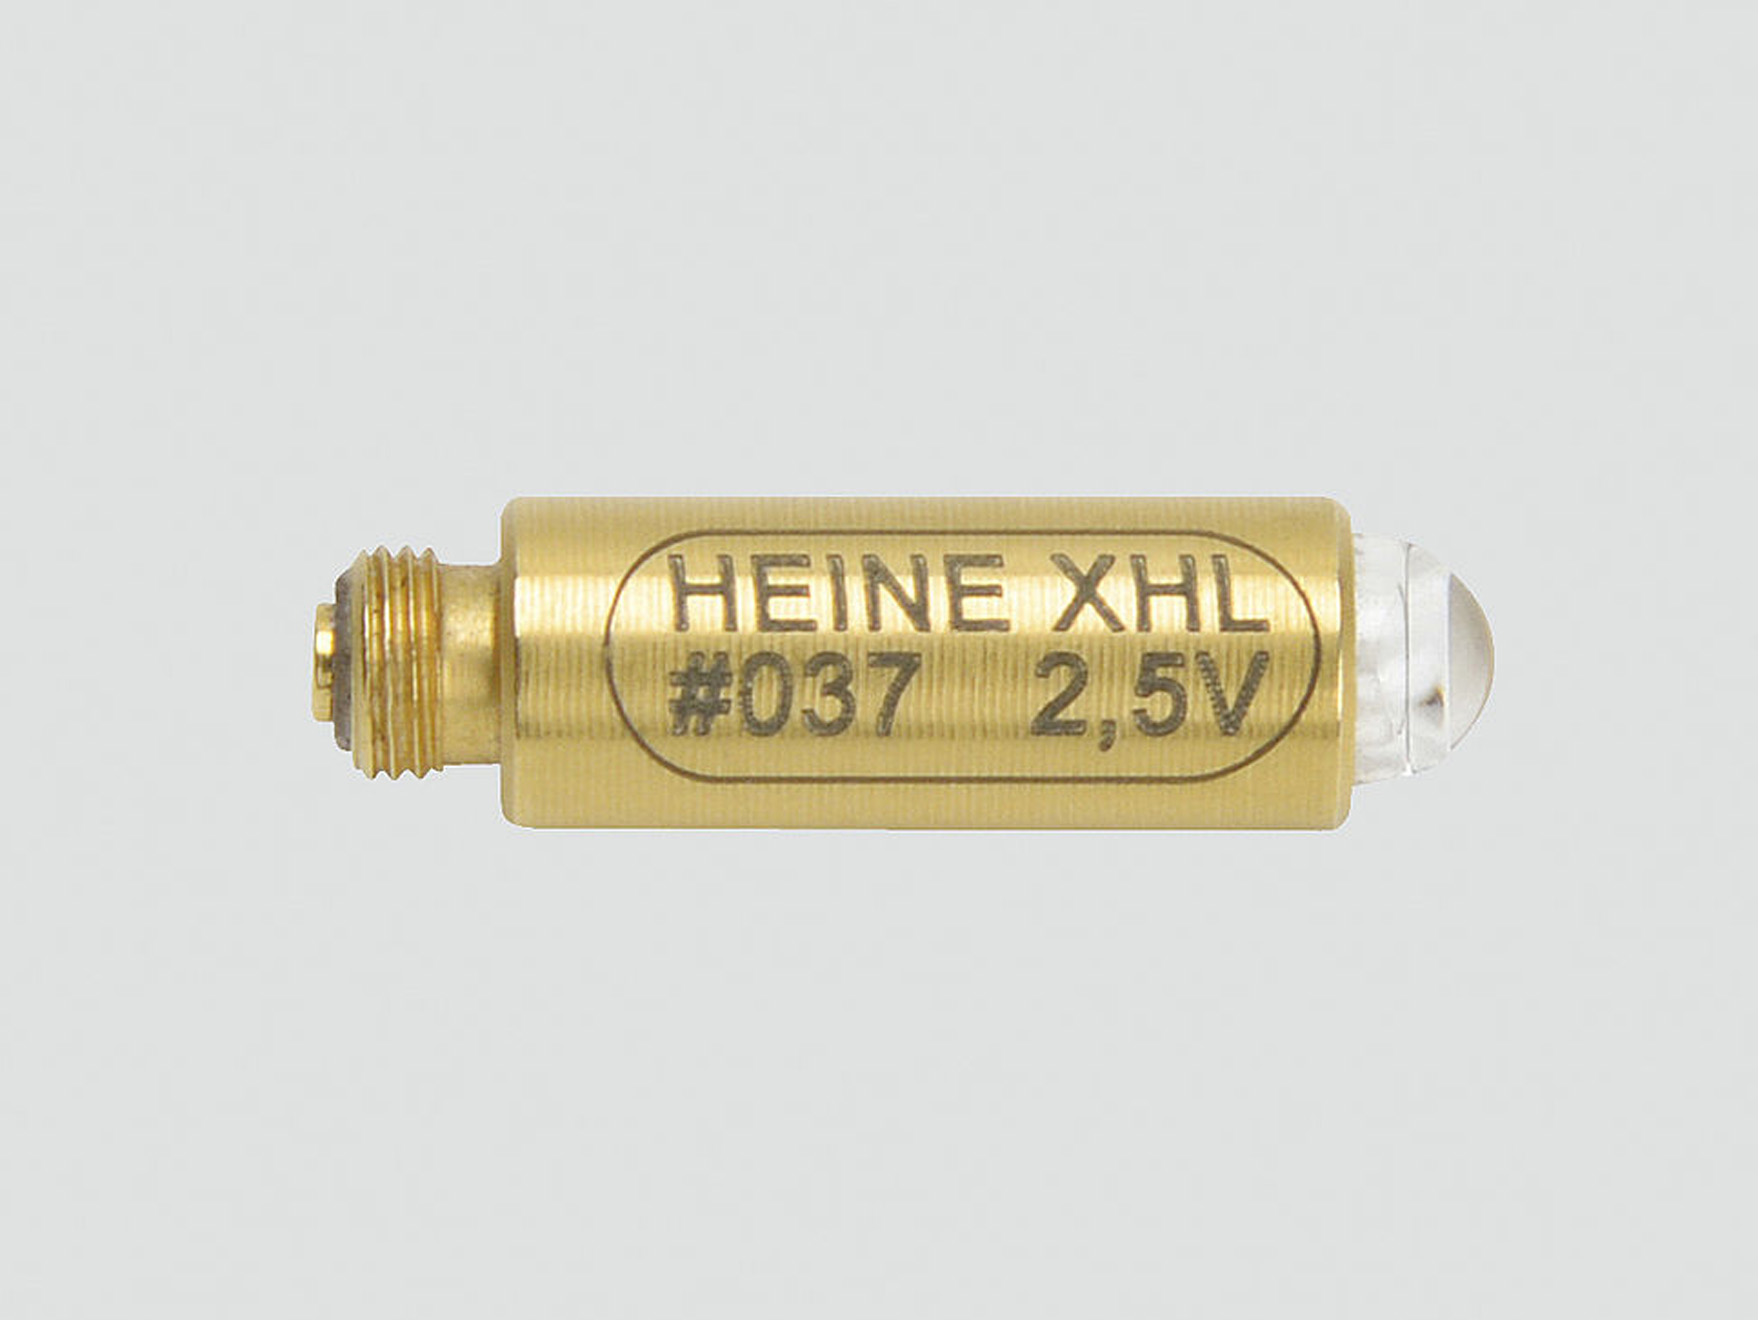 Ampoule X-01.88.037 - 2,5V - halogène - 1 pc